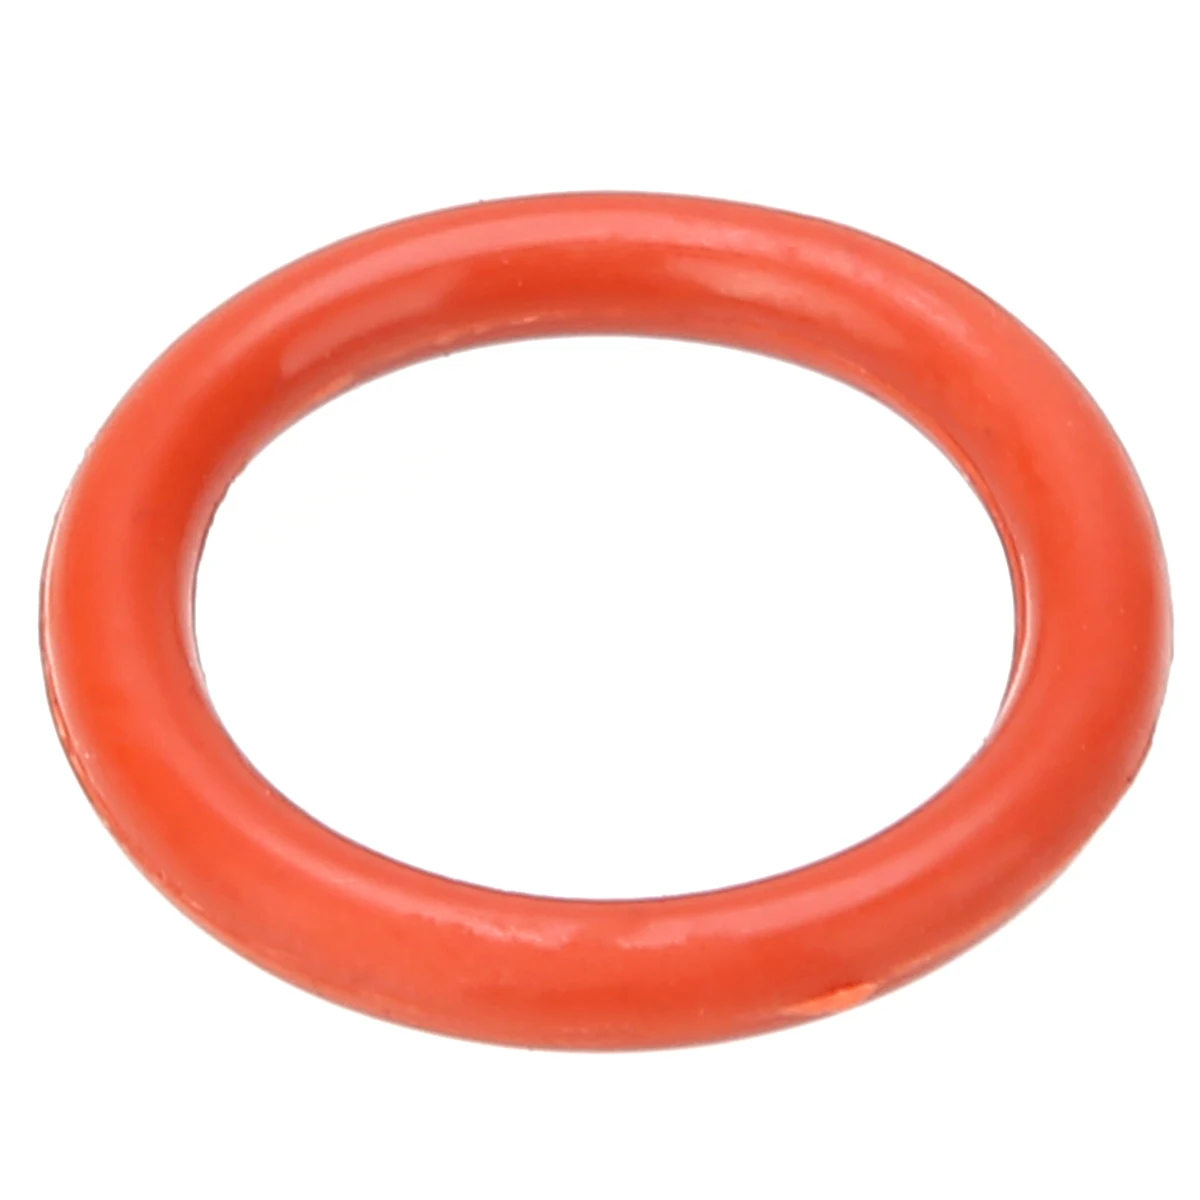 Новинка, 20 штук, силиконовые кольца с демпфером, оранжевые, высококачественные силиконовые уплотнительные кольца, подходят для 12AX7 12AU7 12AT7 12BH7 EL84